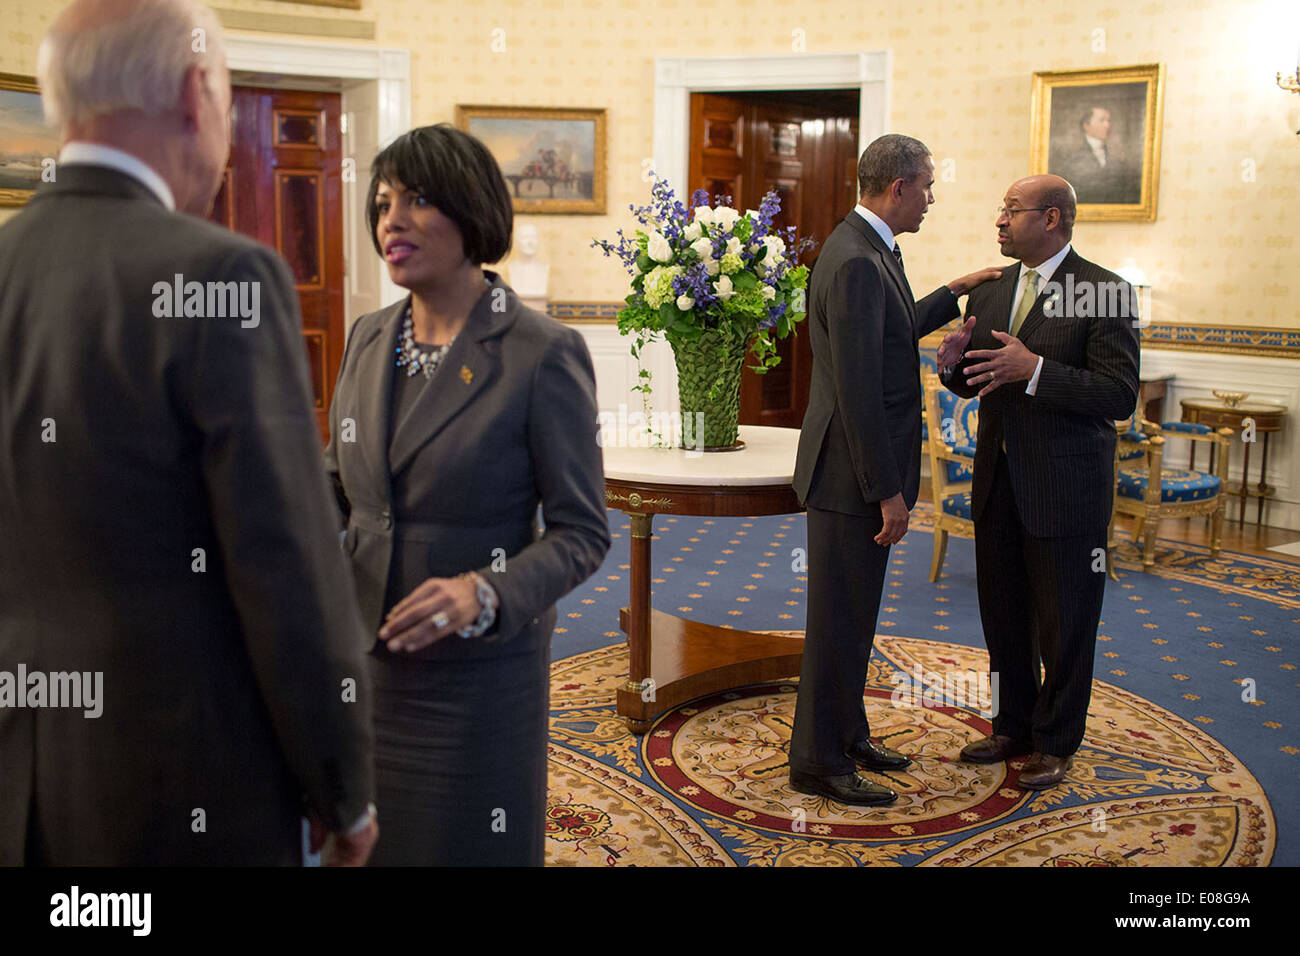 Le président américain Barack Obama salue le maire de Philadelphie Michael Nutter tandis que le Vice-président Joe Biden parle avec le maire de Baltimore Stephanie Rawlings-Blake lors d'une réception pour la Conférence des maires dans la salle bleue de la Maison Blanche le 23 janvier 2014 à Washington, DC. Banque D'Images